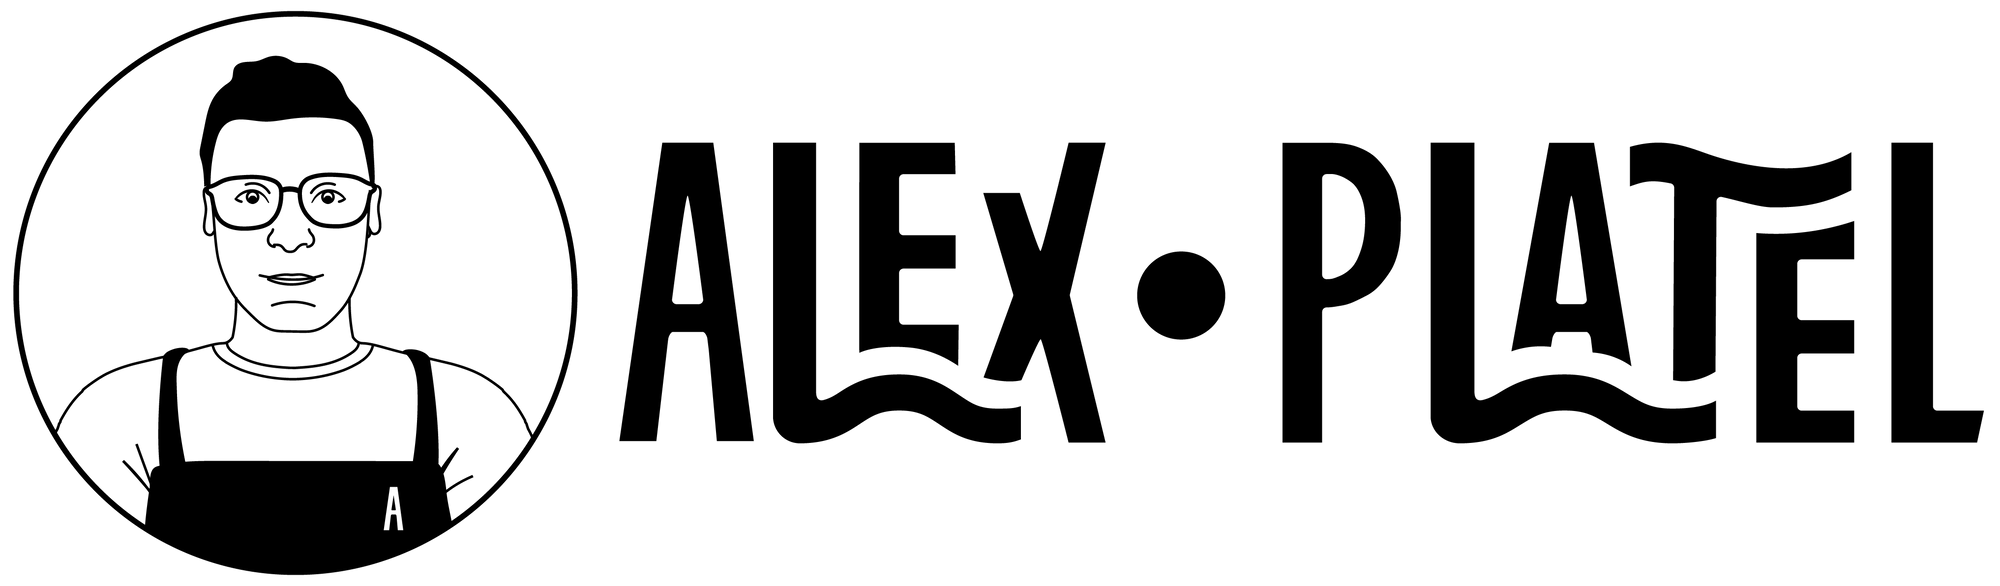 alex-platel-logo